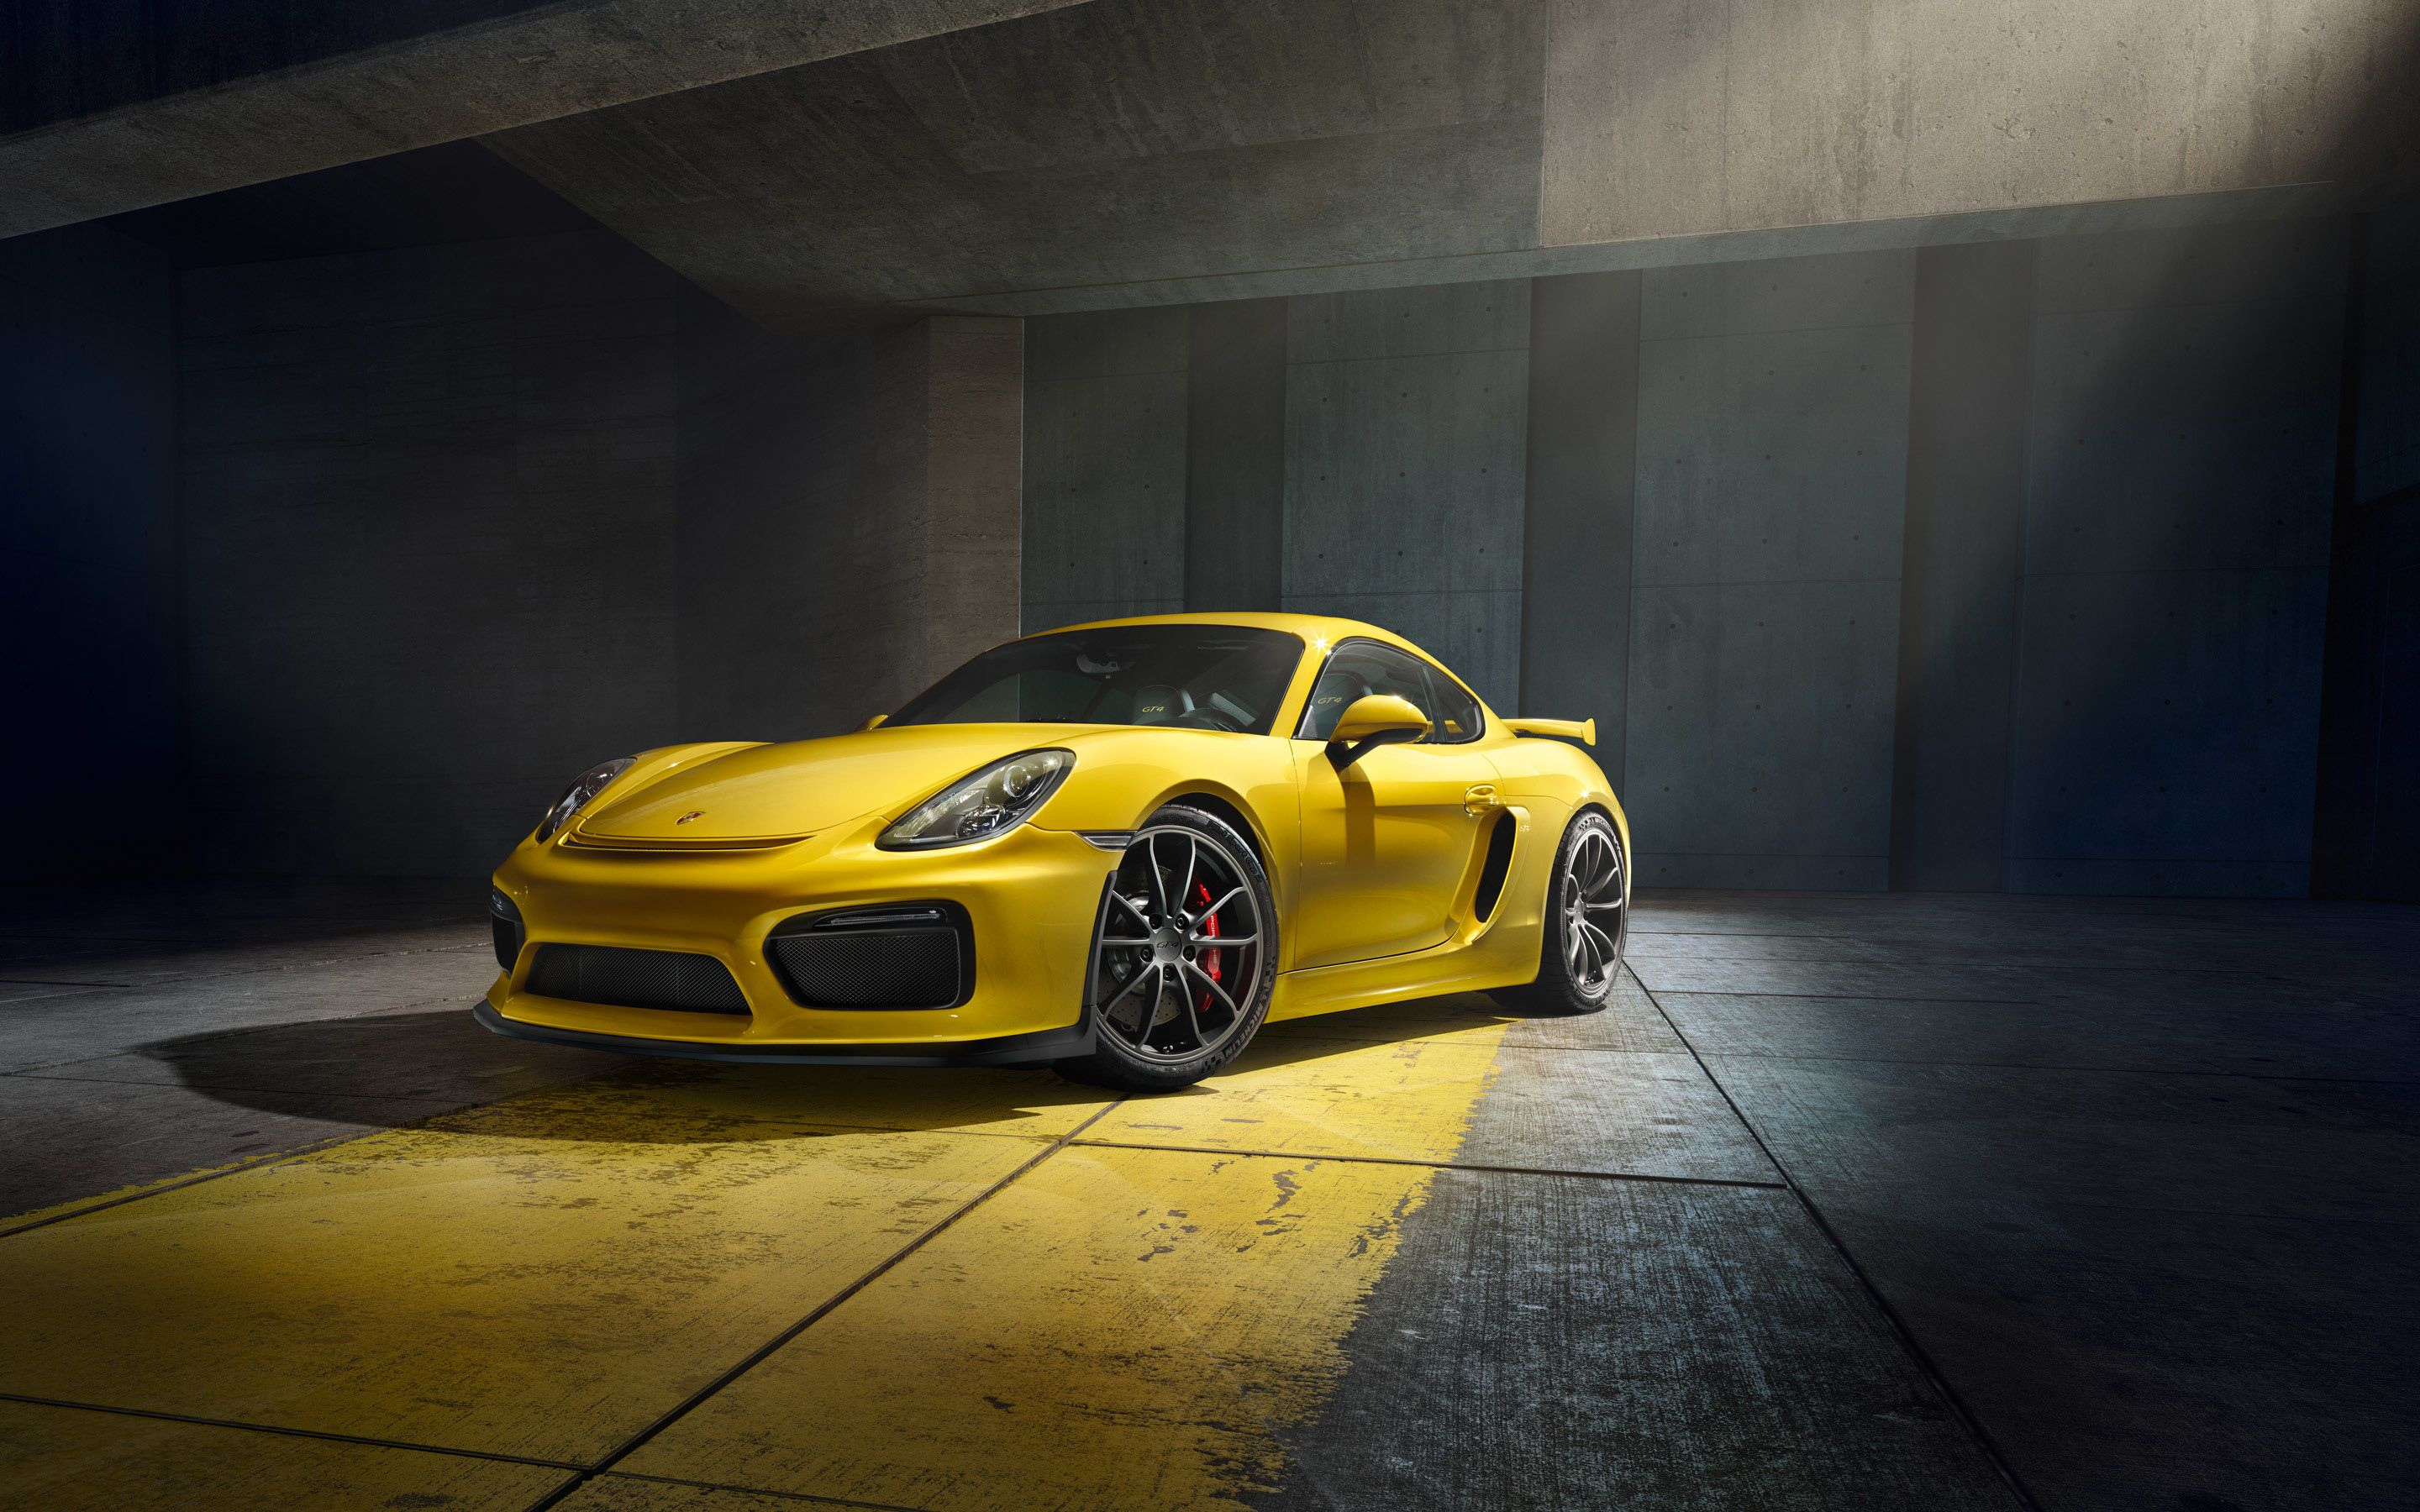 2880x1800 HD Porsche Wallpapers Top Free HD Porsche Backgrounds